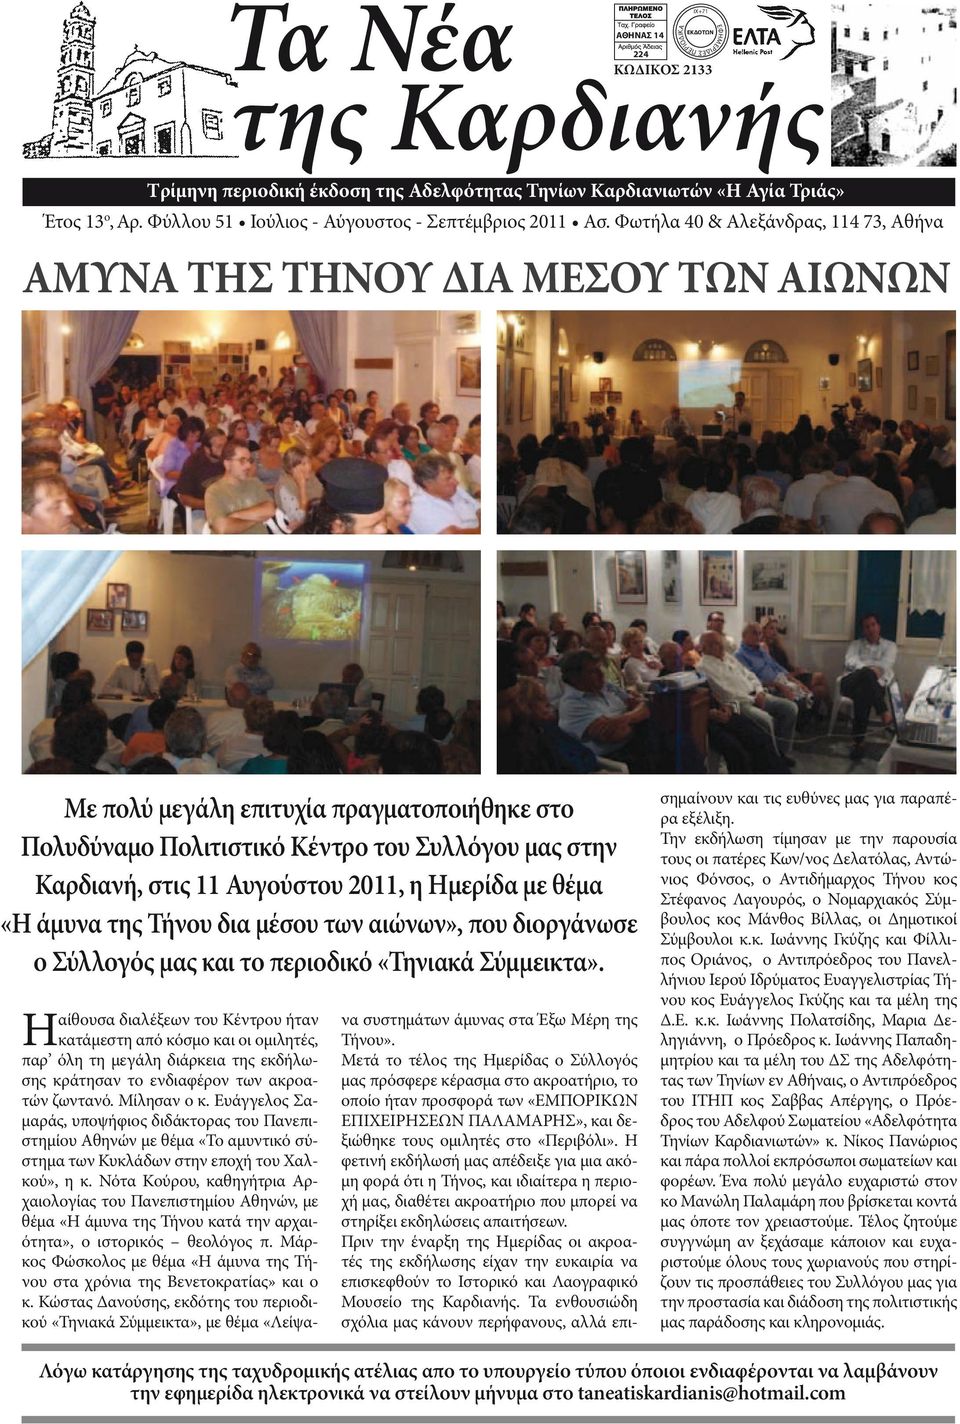 στην Καρδιανή, στις 11 Αυγούστου 2011, η Ημερίδα με θέμα «Η άμυνα της Τήνου δια μέσου των αιώνων», που διοργάνωσε ο Σύλλογός μας και το περιοδικό «Τηνιακά Σύμμεικτα».